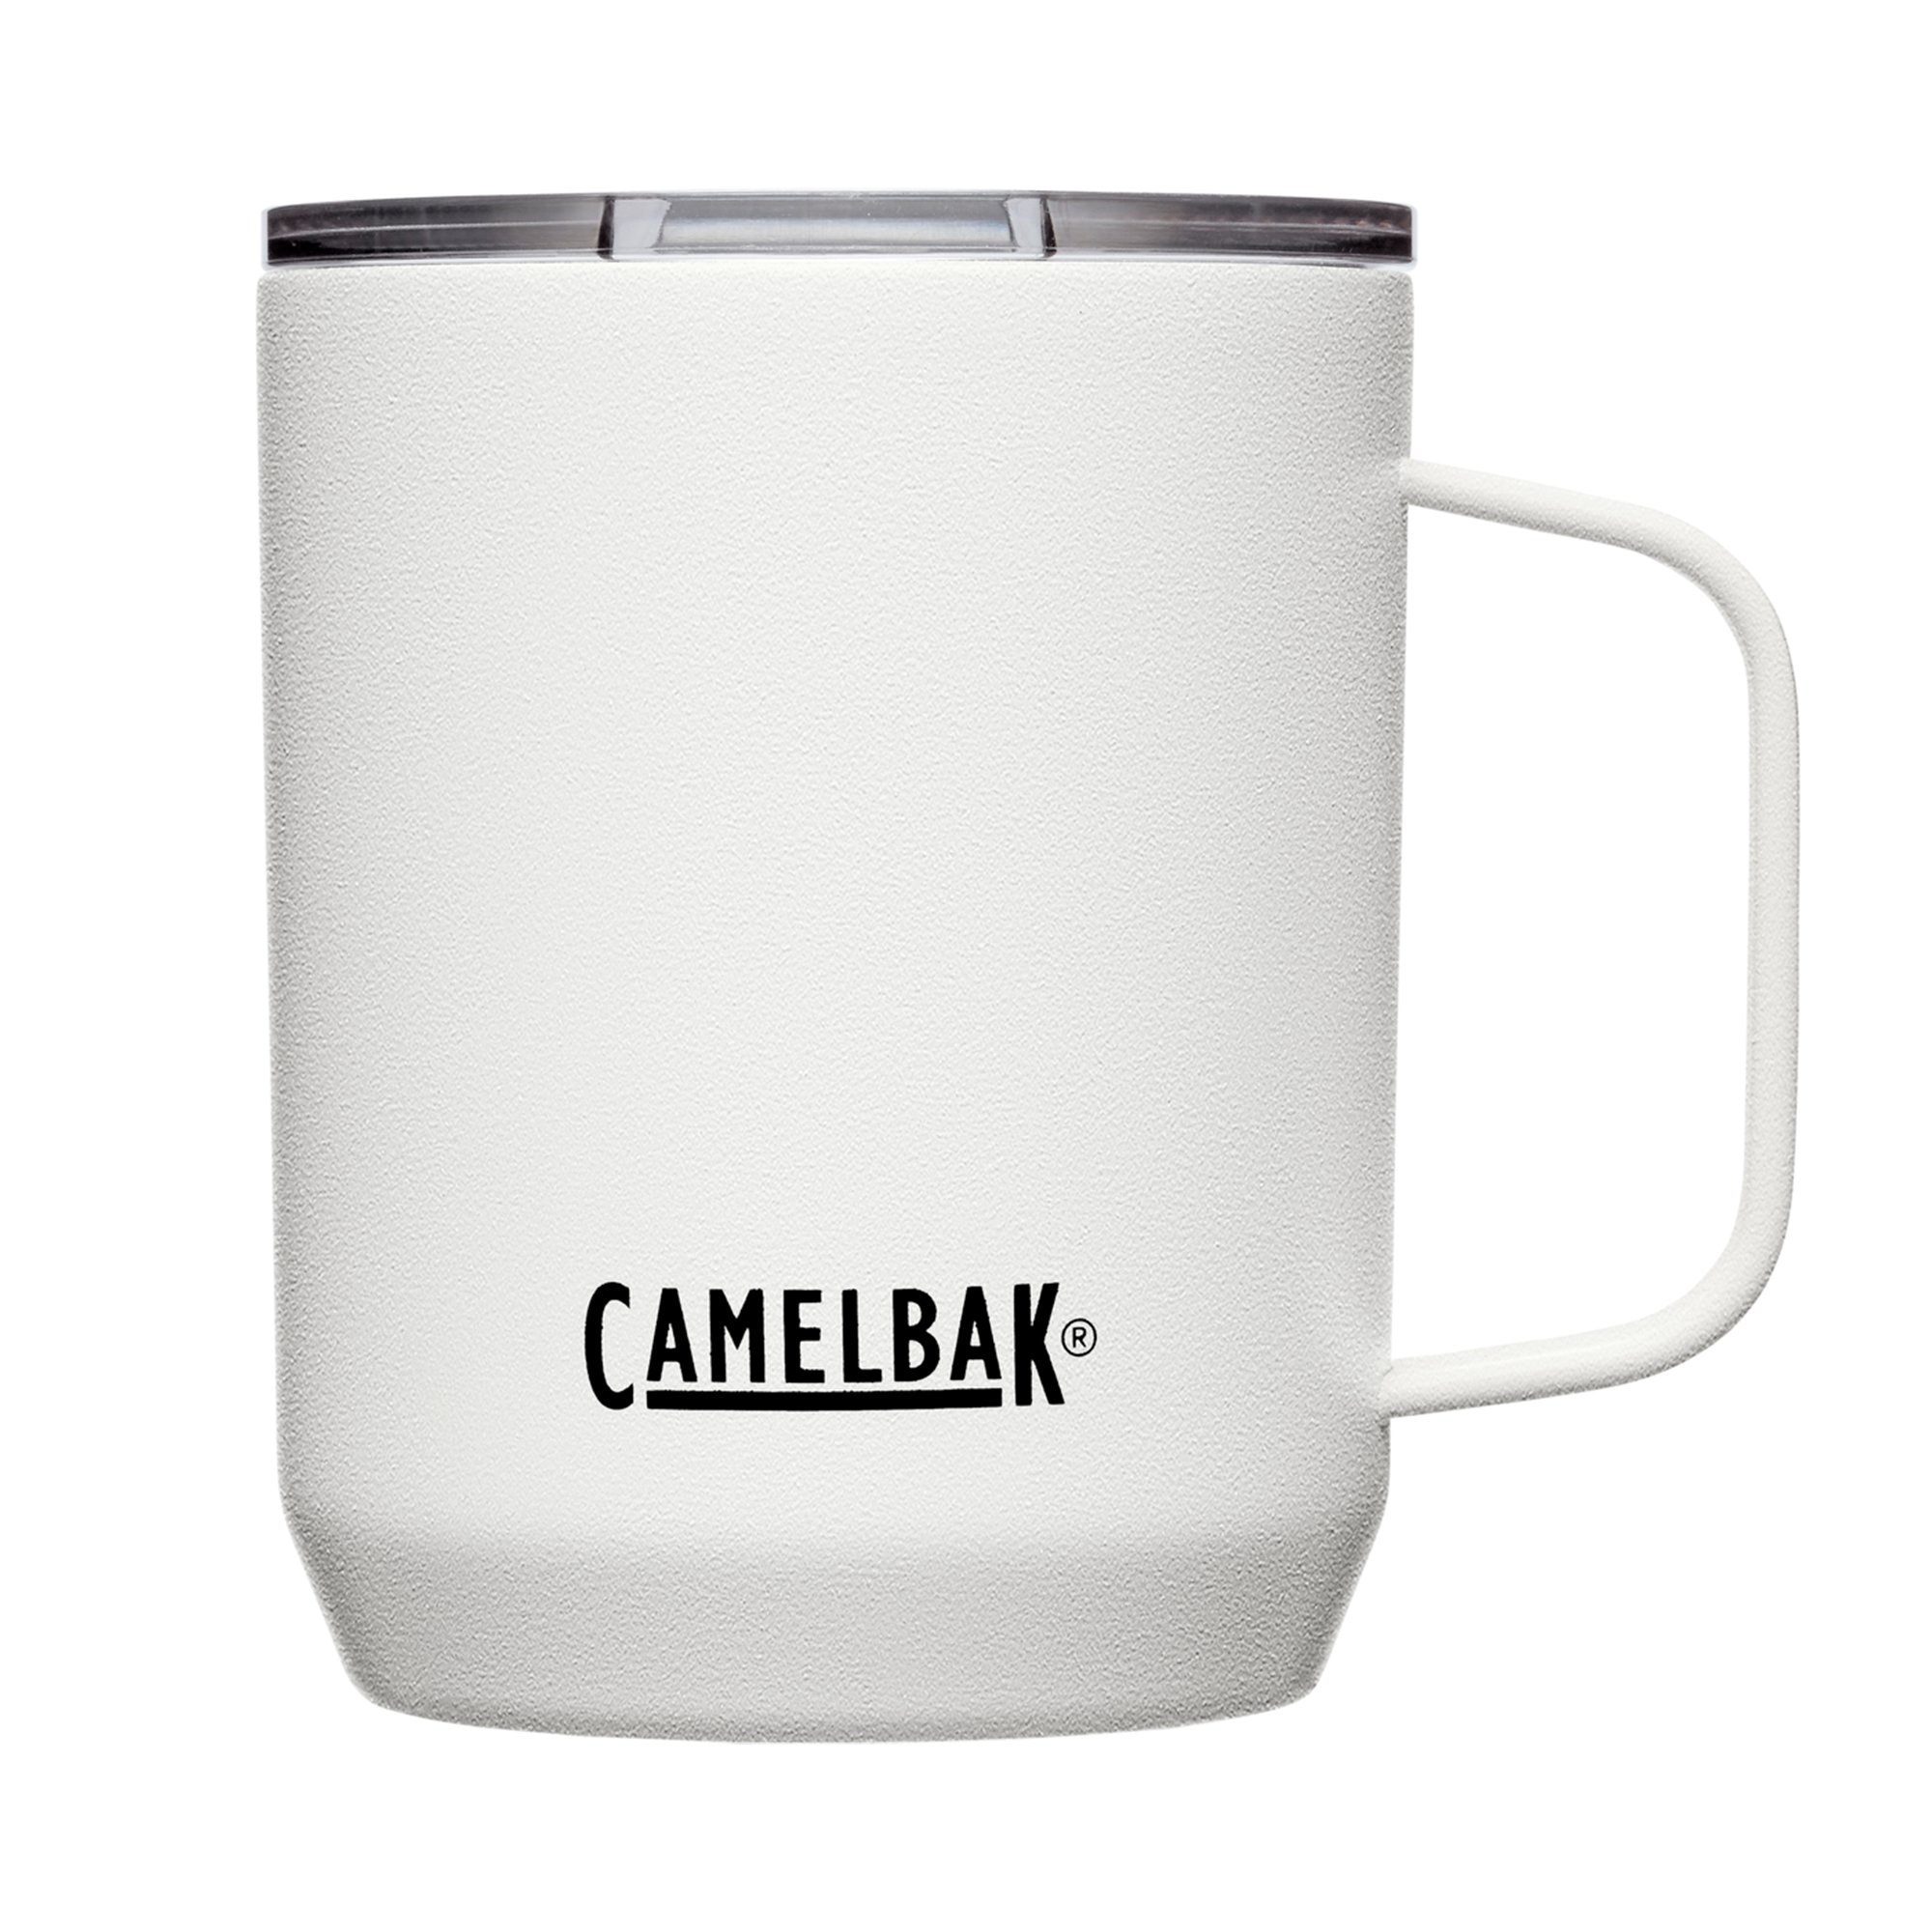 Camelbak Termosmugg 0,35 liter white